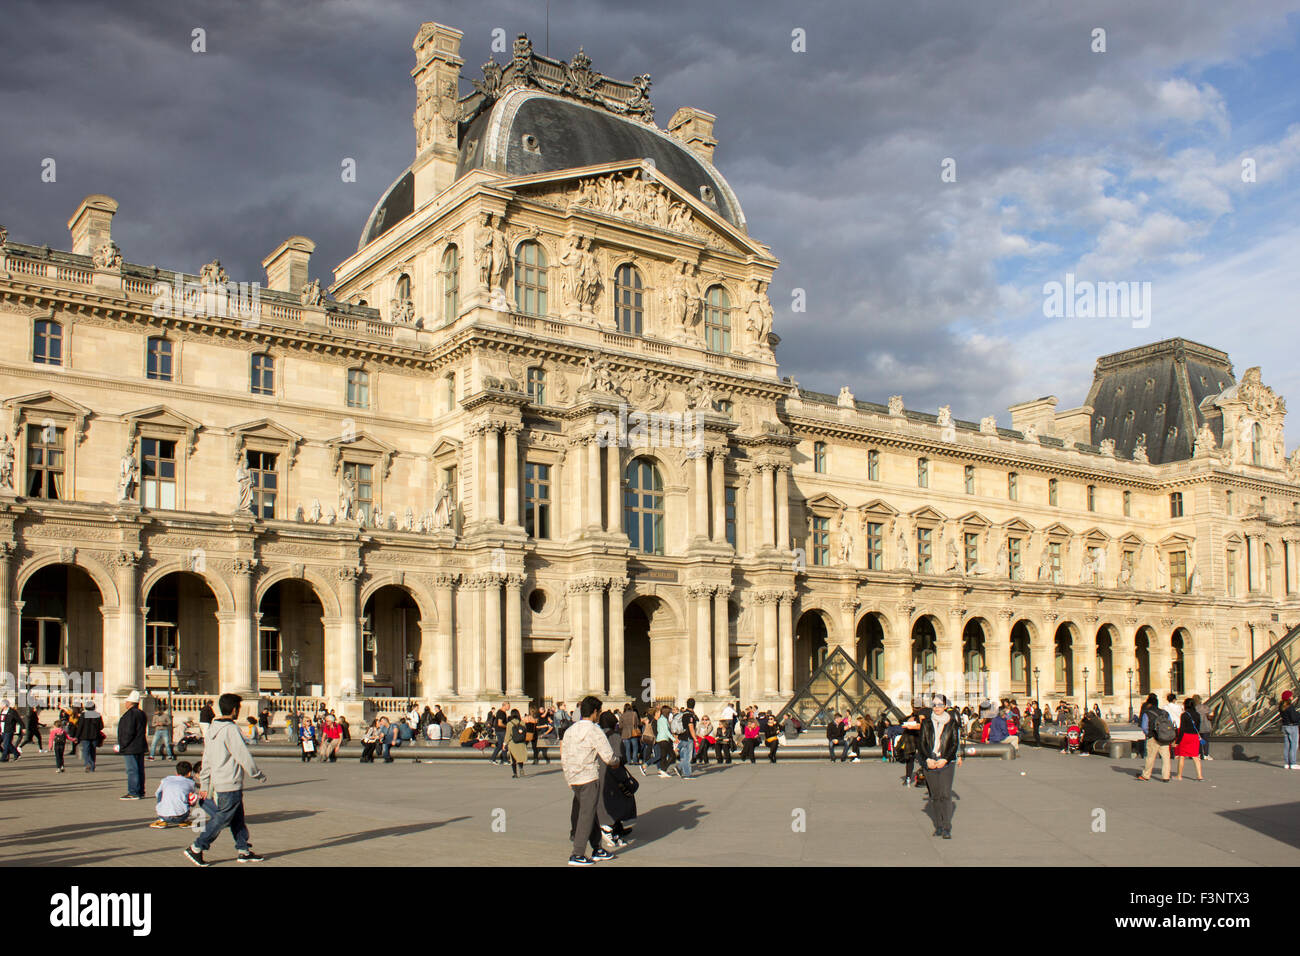 The Louvre Museum.  Paris, France. Stock Photo